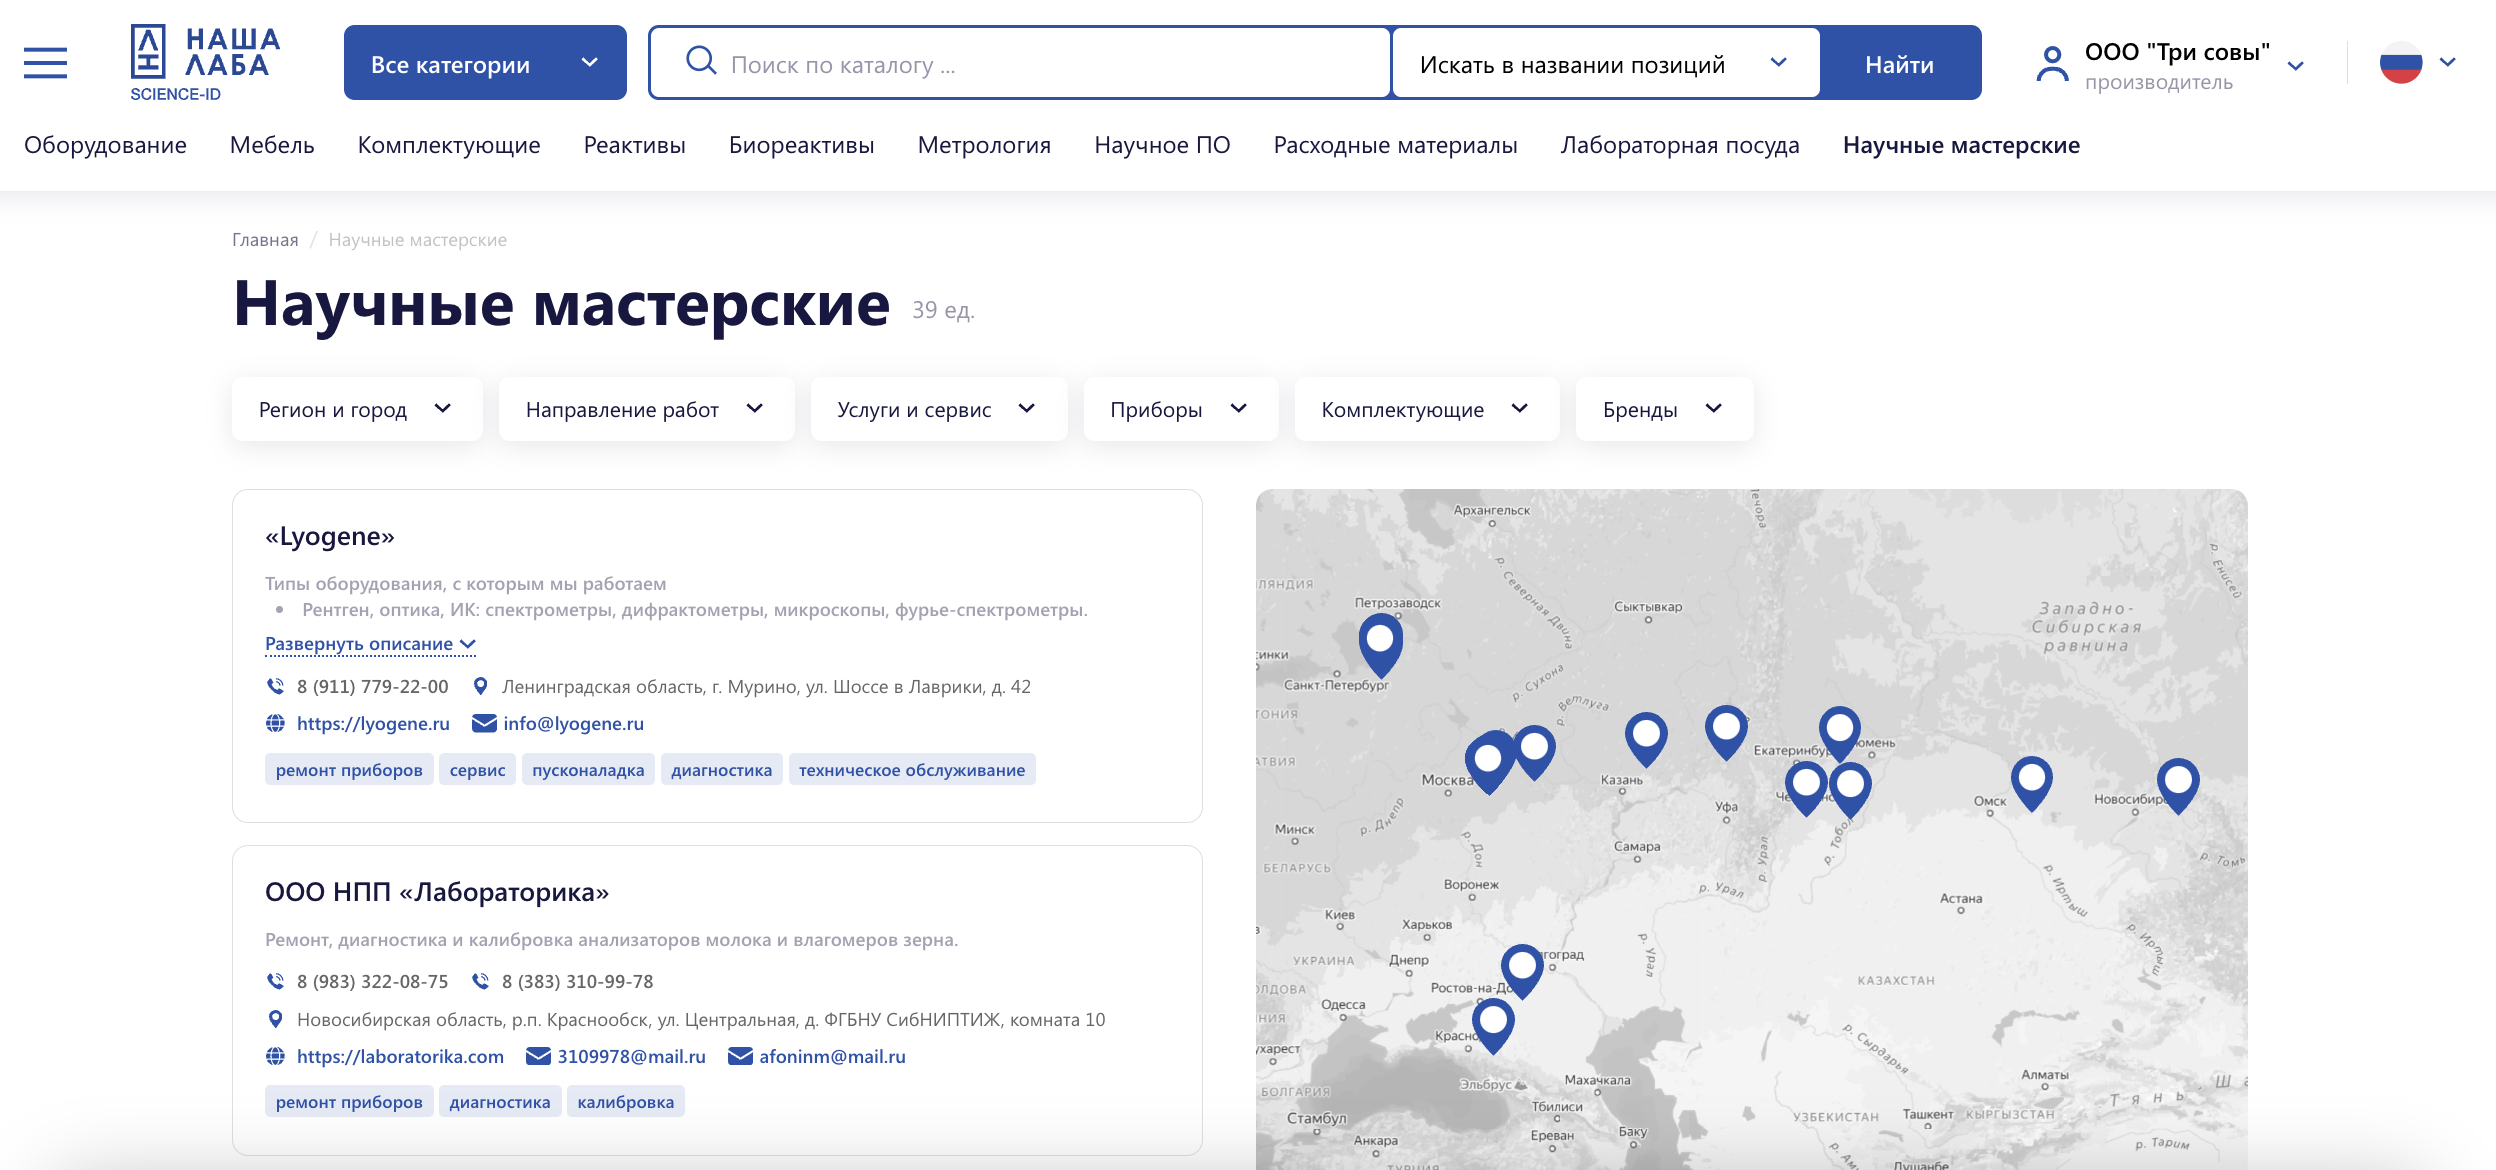 ​В реестр "Научные мастерские" добавилось 4 новых участника из Ленинградской и Новосибирской областей